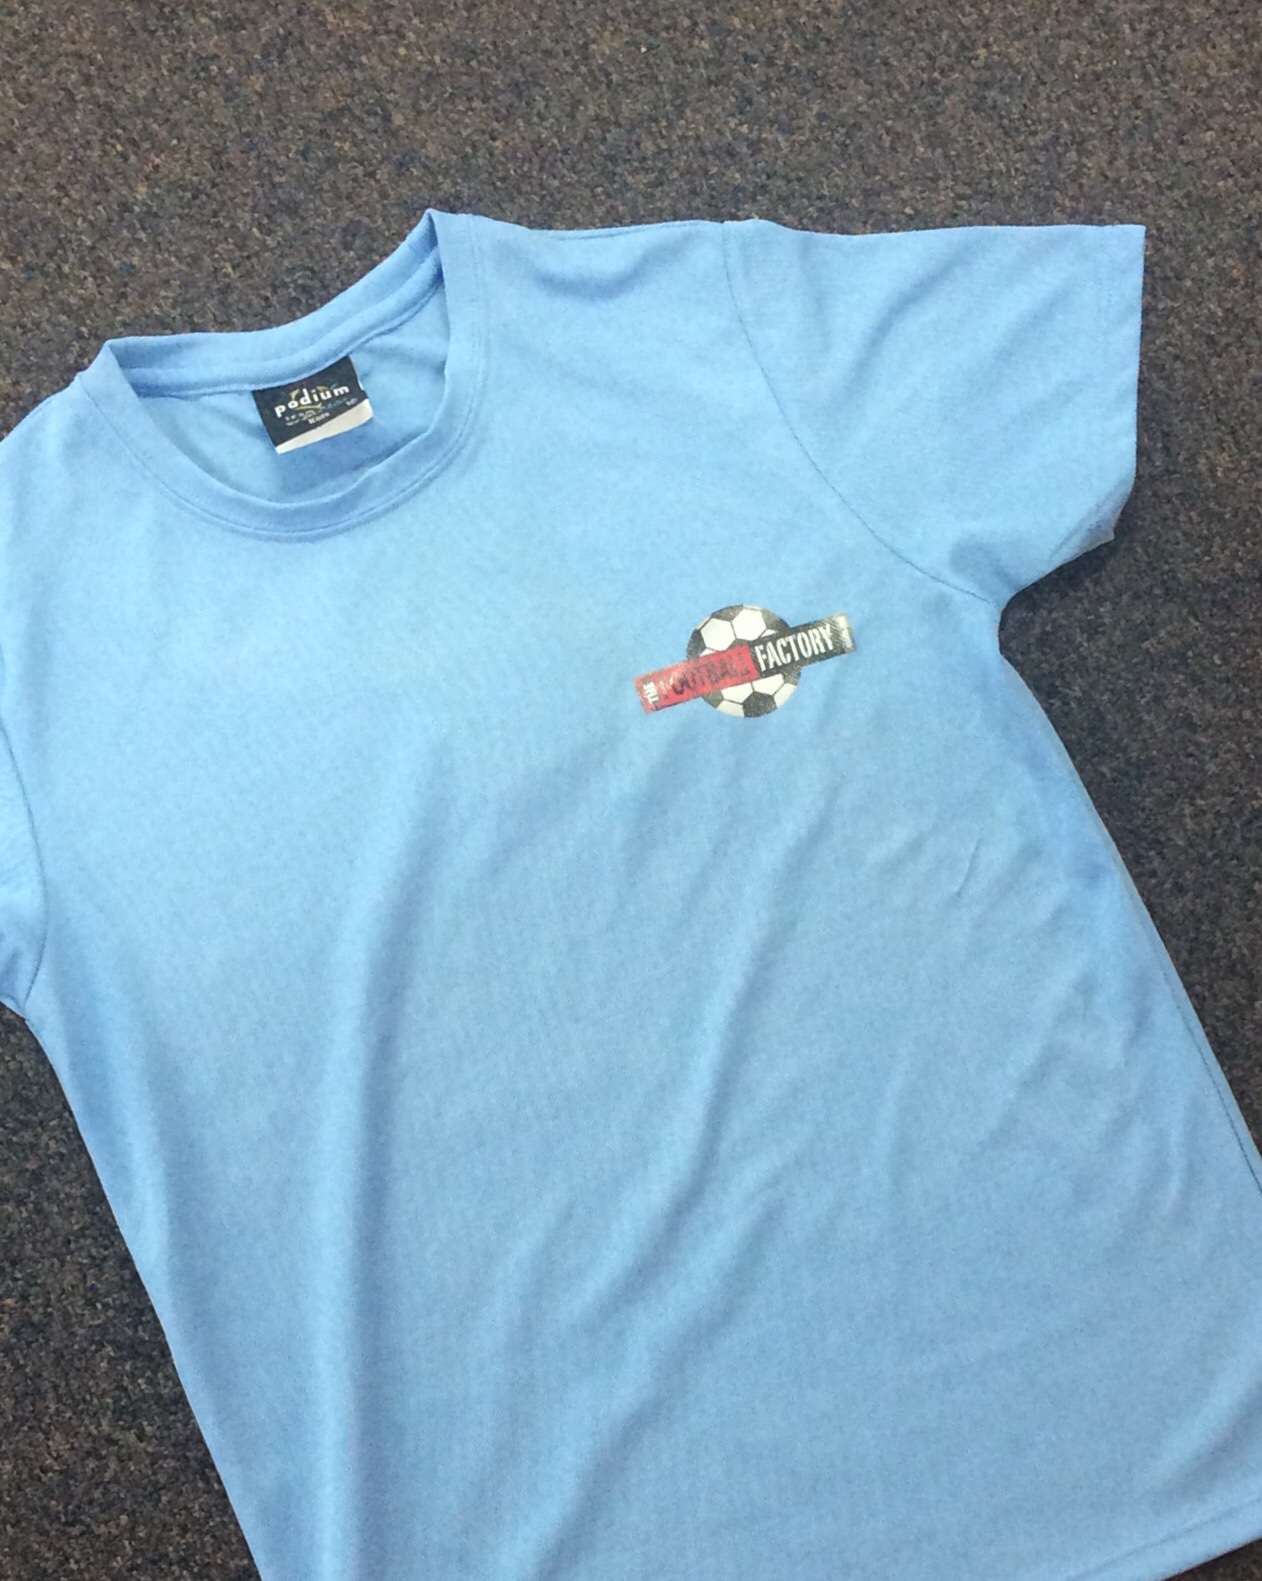 Kids Football Factory T-Shirt (Light Blue)